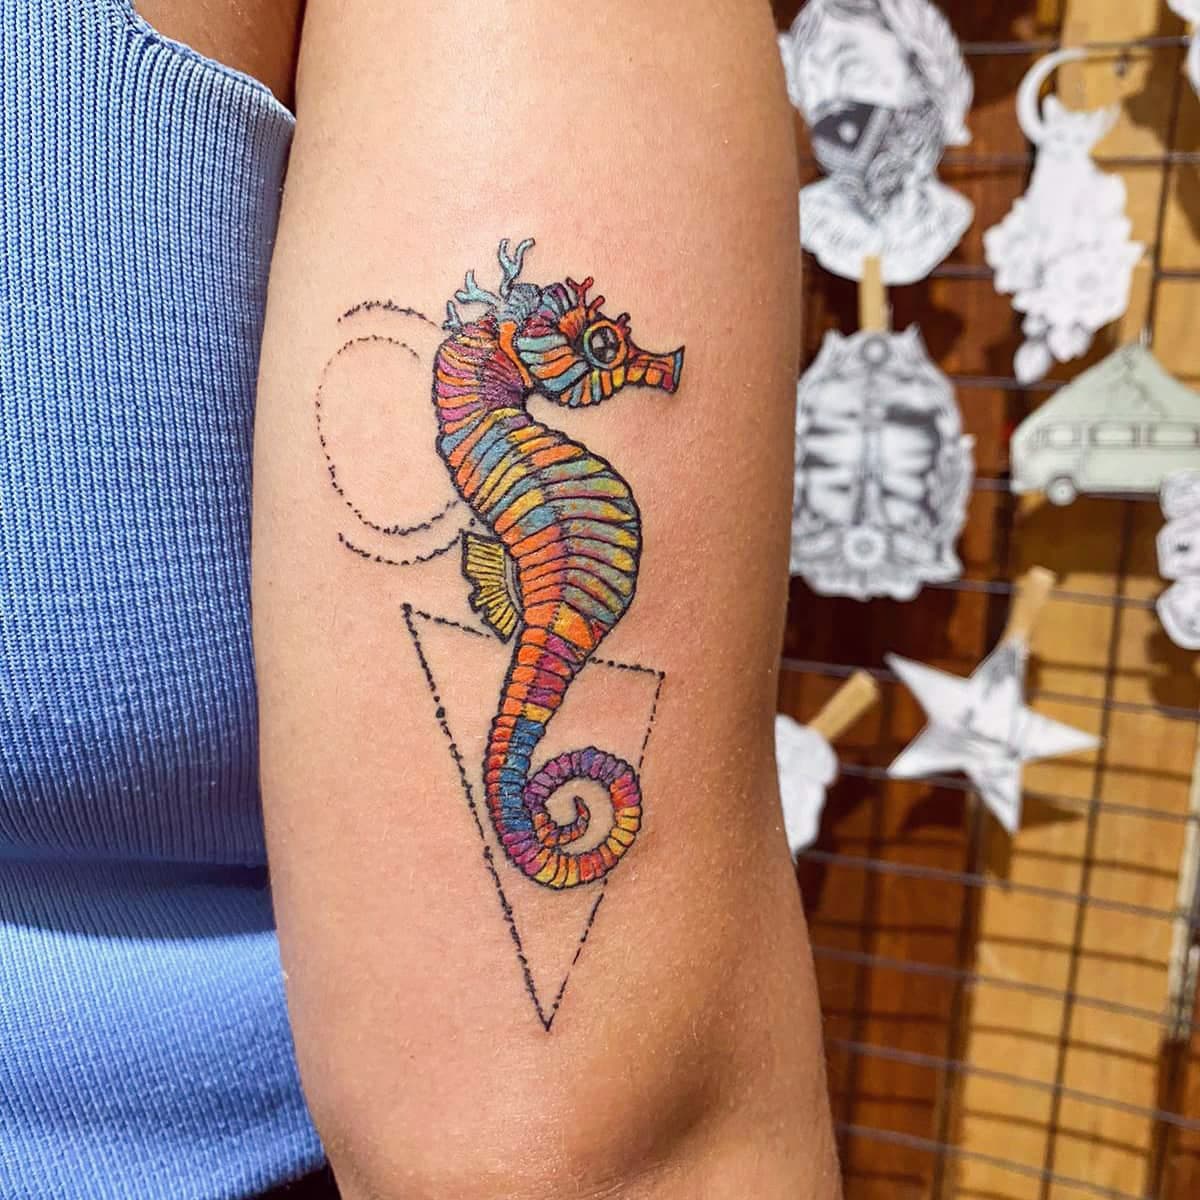 Tatuaje del caballito de mar Diseño simétrico y colorido pequeño